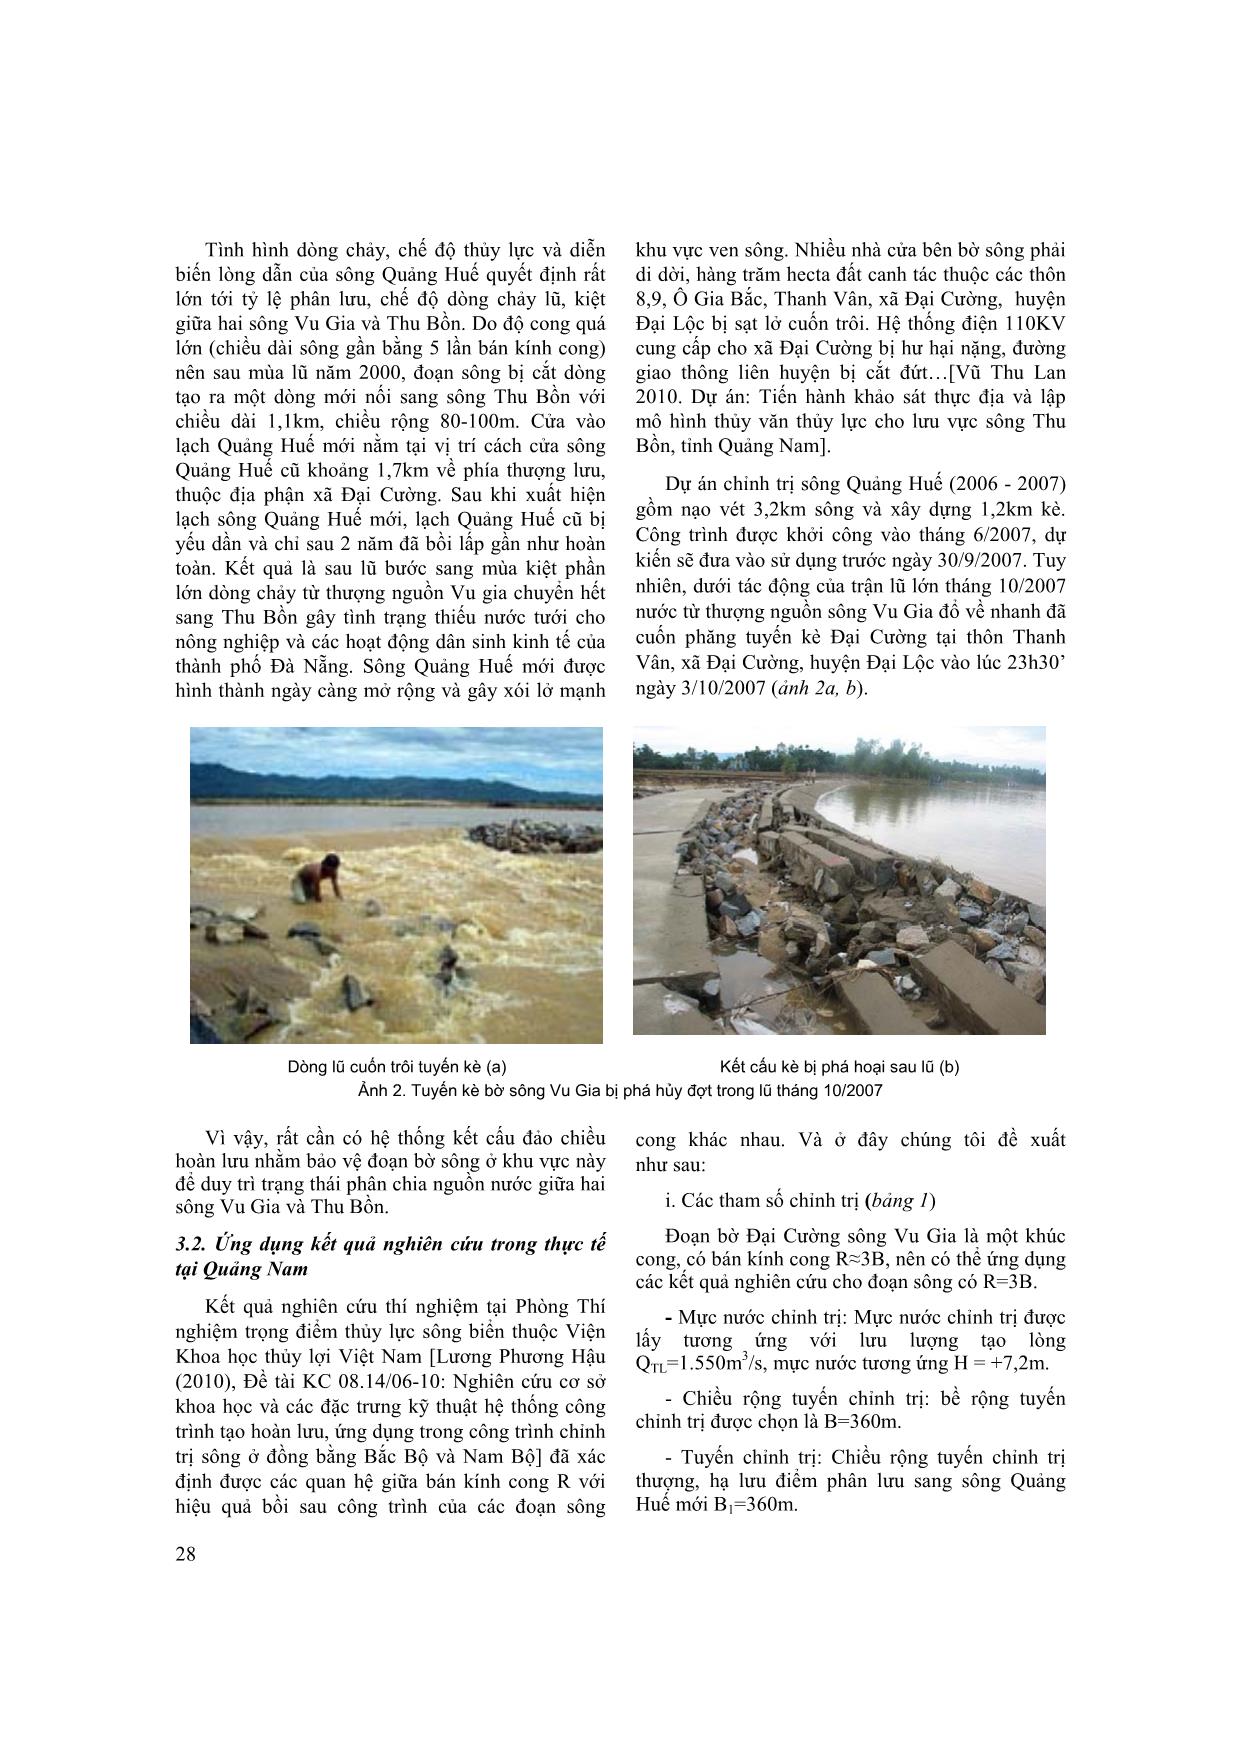 Hiệu quả ứng dụng kết cấu đảo chiều hoàn lưu chống sạt lở bờ sông vu gia khu vực xã Đại Cường, tỉnh Quảng Nam trang 4